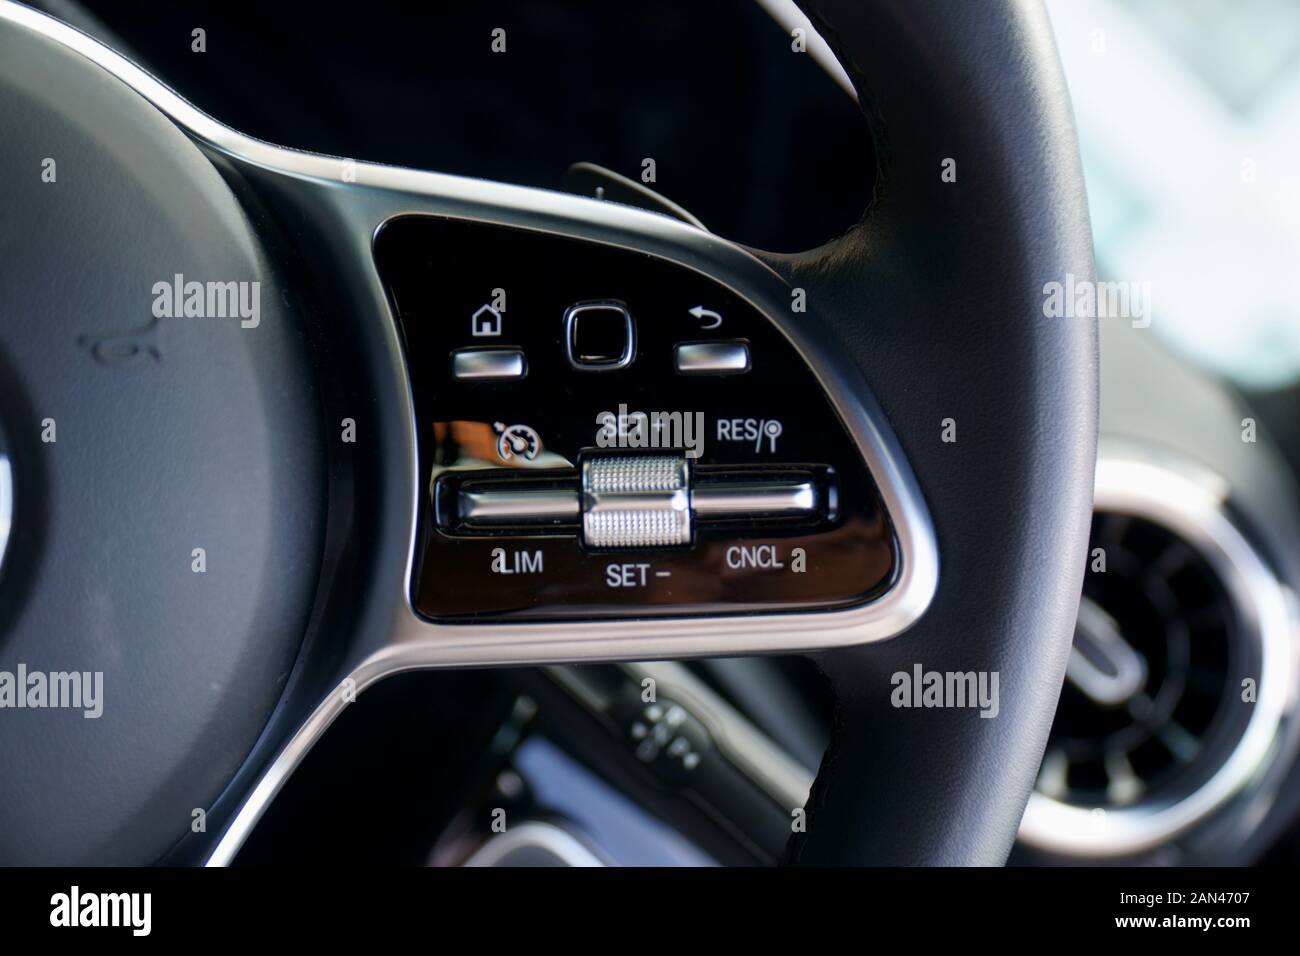 Comandi al volante immagini e fotografie stock ad alta risoluzione - Alamy